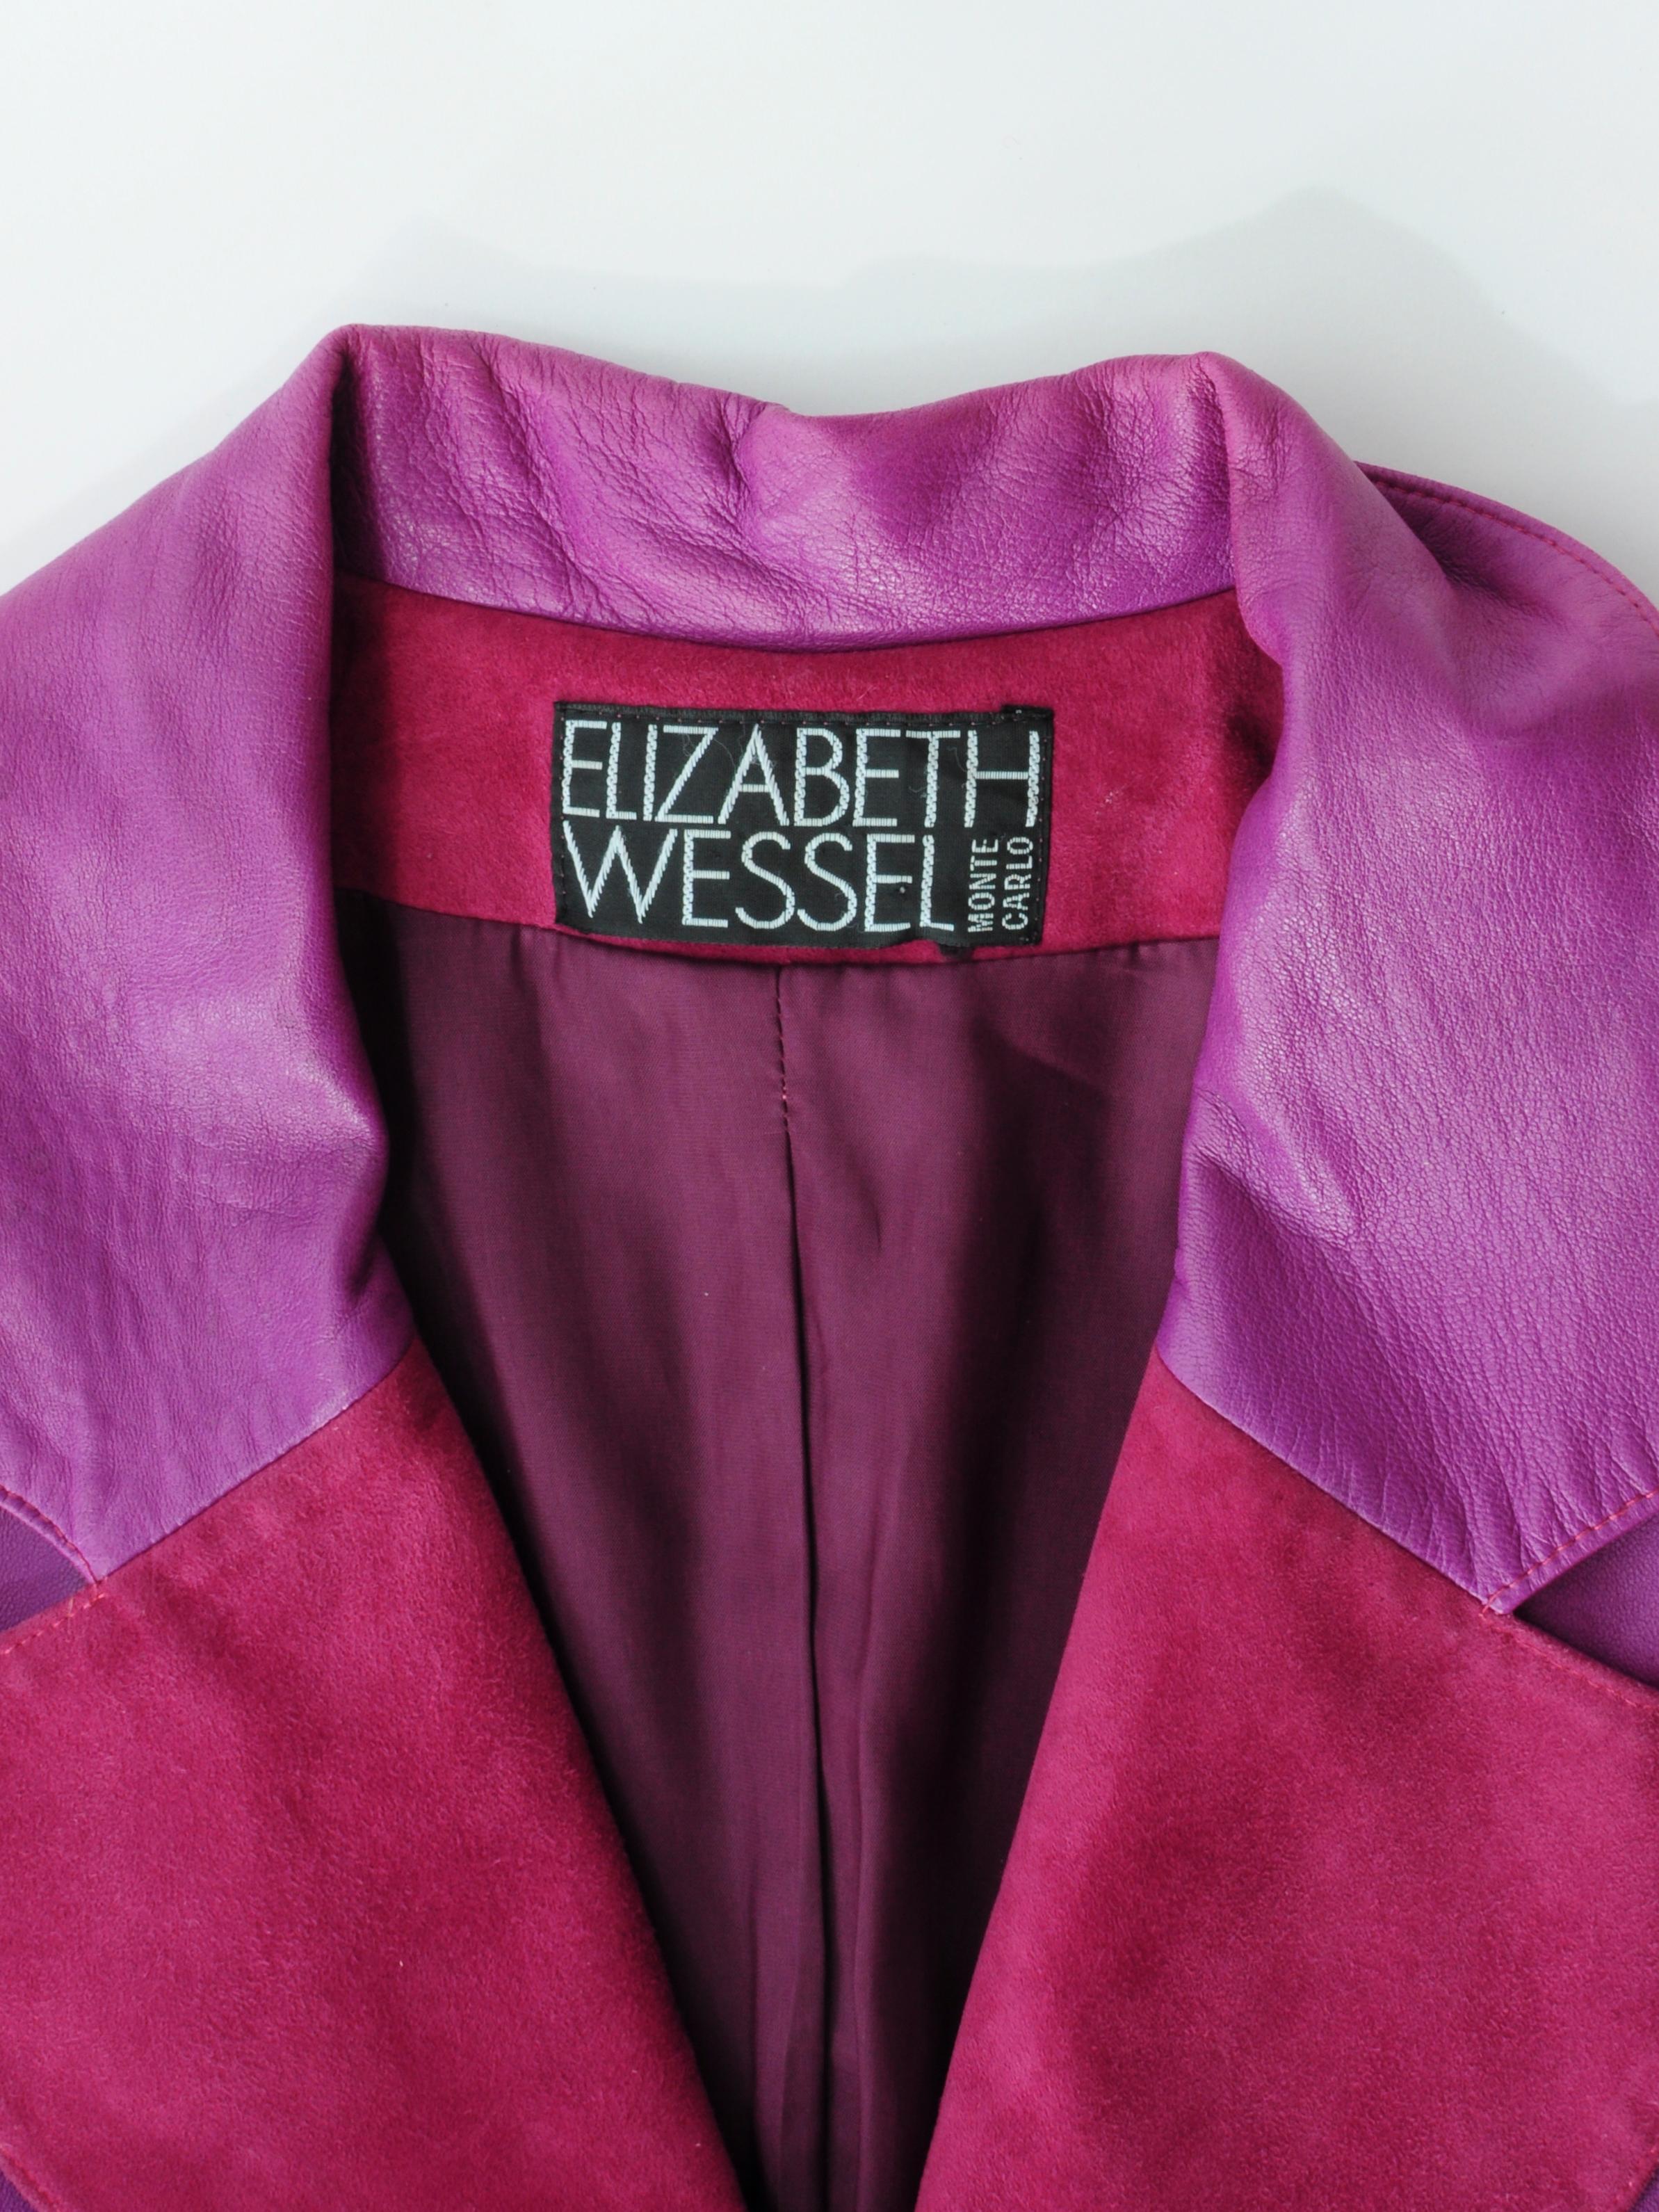 Elizabeth Wessel Monte Carlo Leather and Knitwear Purple Blazer 1980s For Sale 4